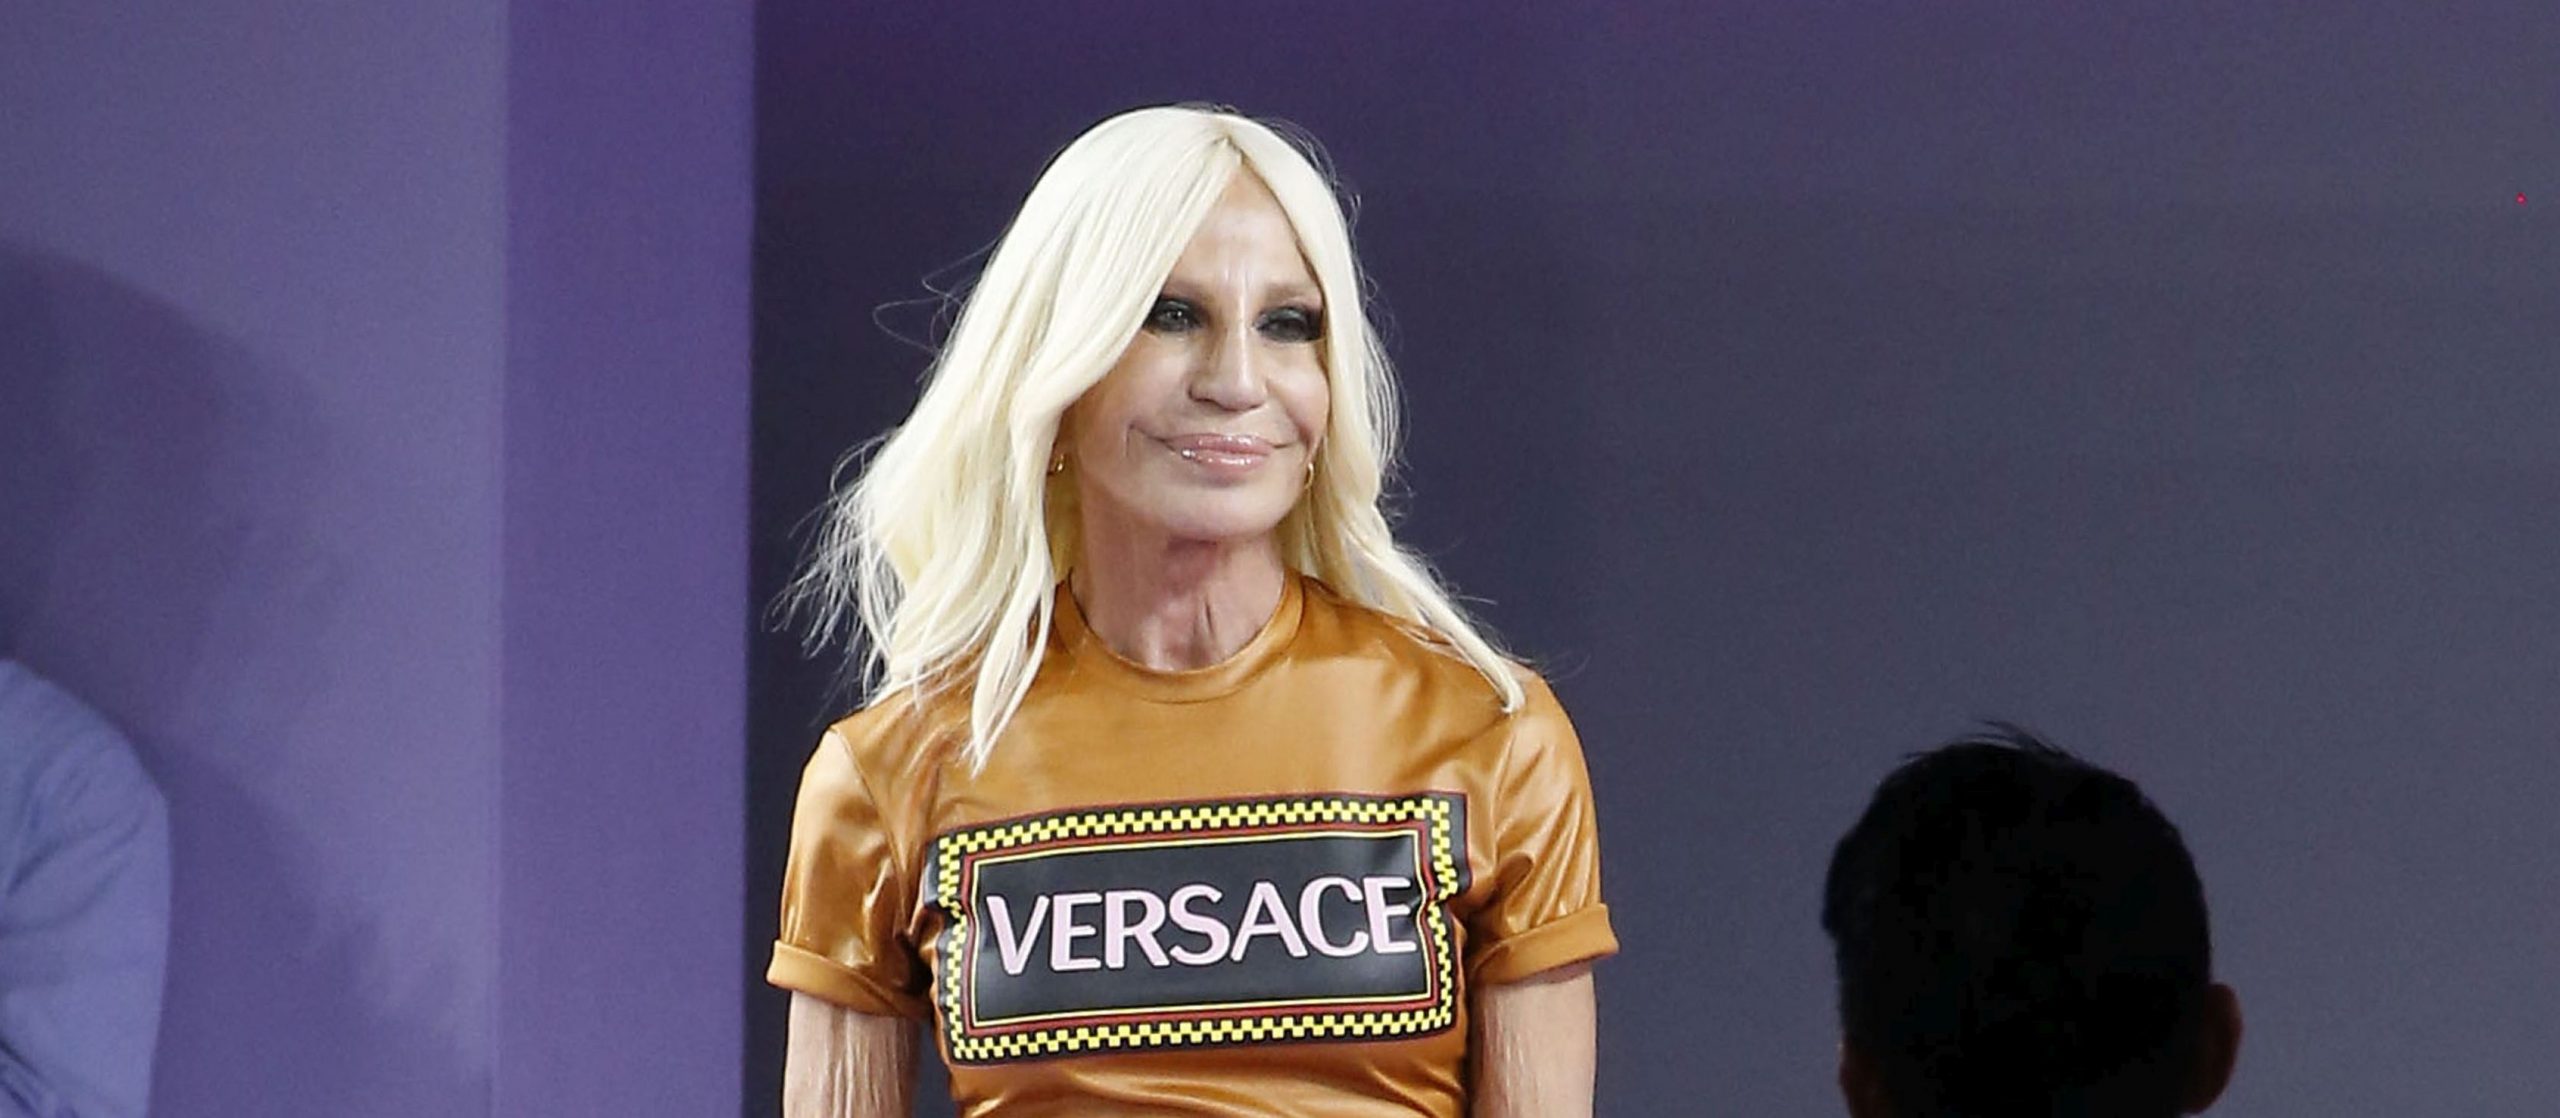 Fashion gigantul Michael Kors urmeaza sa cumpere compania italiana Versace